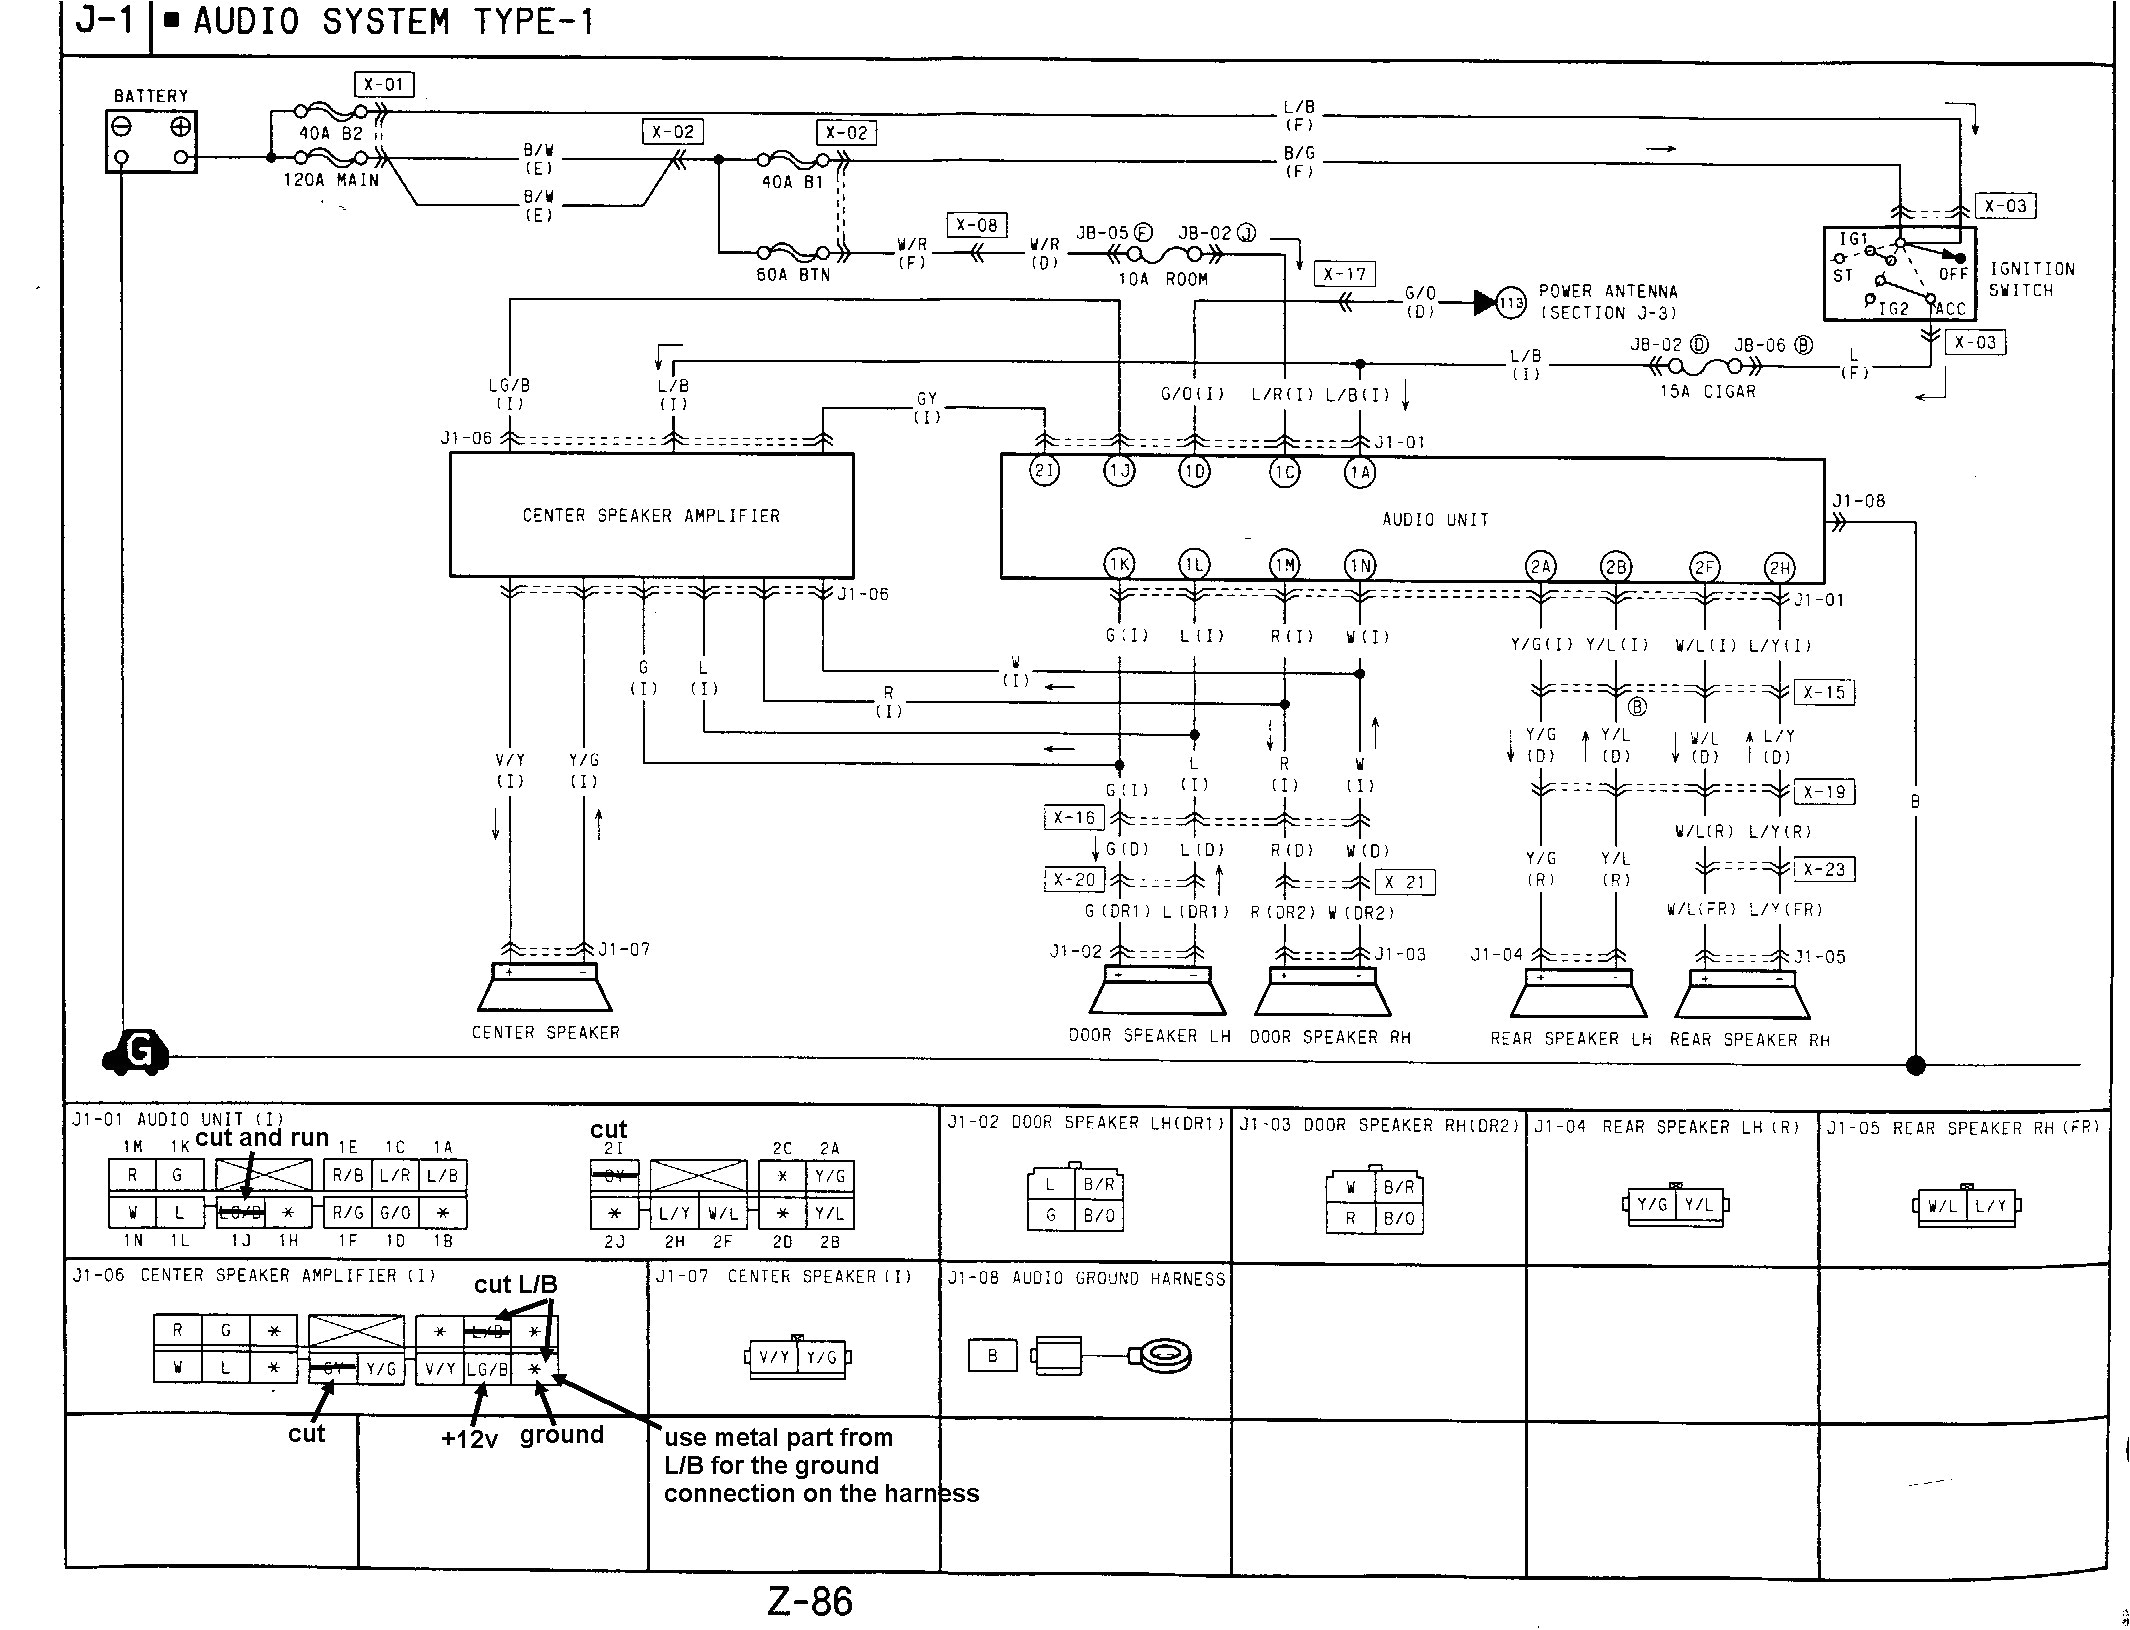 wiring diagram for bose wiring diagram article review bose lifestyle 5 wiring diagram wiring diagram showbose